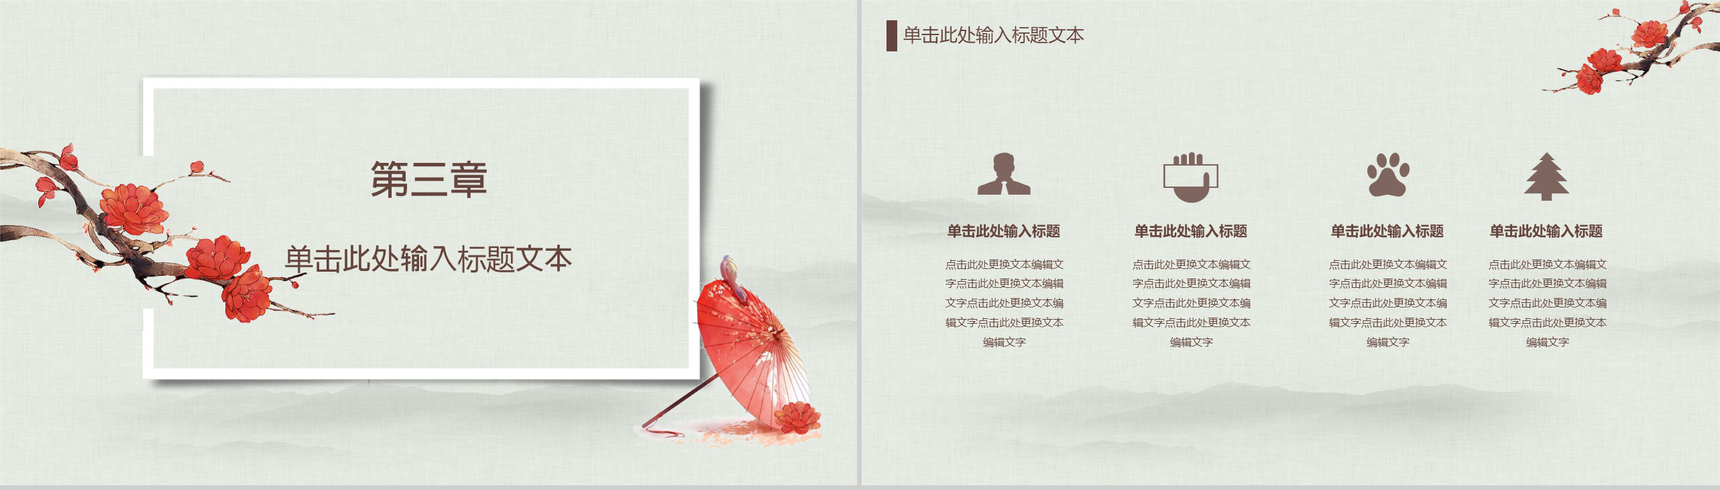 中国传统文化宫廷风传统文化PPT模板-8